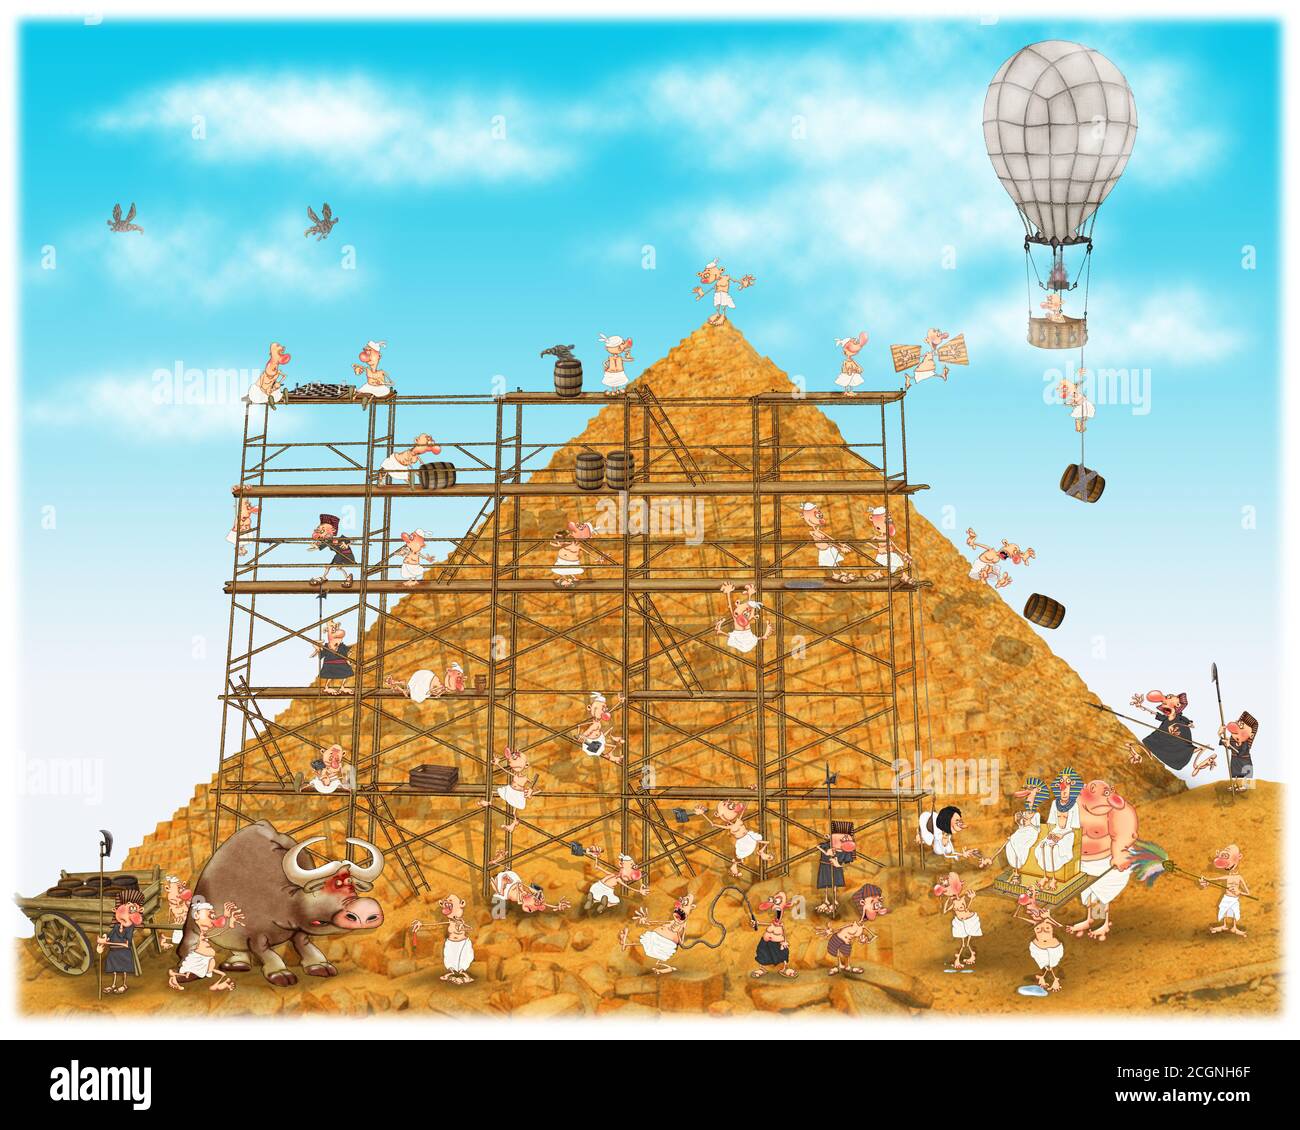 Игра в пирамиду персонажи. Стройка пирамид. Пирамиды строятся иллюстрация. Пирамиды строили инопланетяне карикатура. Стройка пирамиды игра.